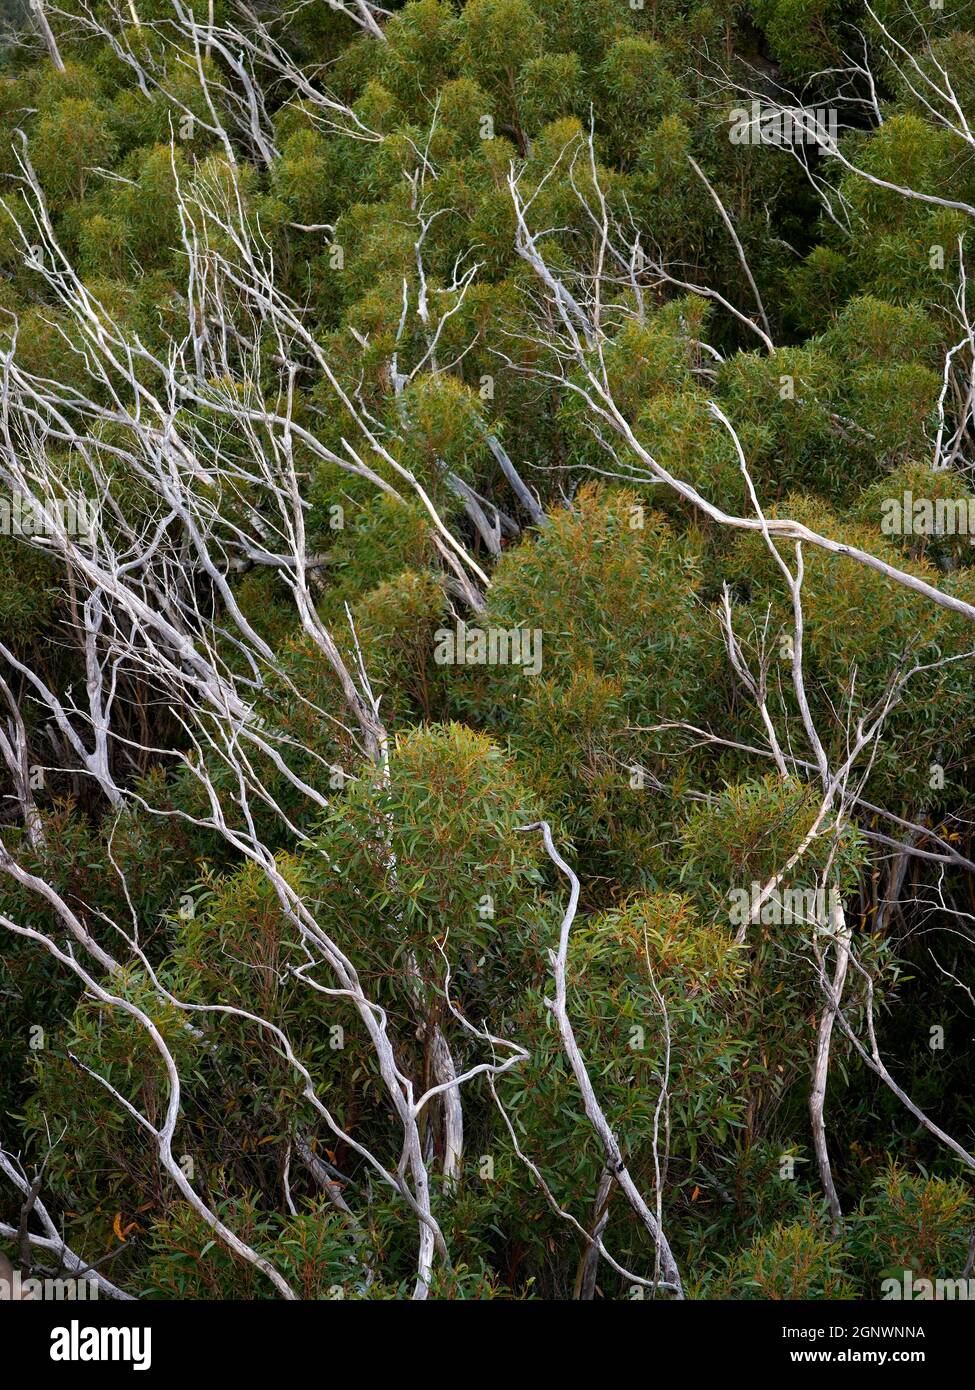 Nuova crescita di eucalipti con vecchi rami morti sbiancati dopo il fuoco di bush, Blue Mountains, NSW, Australia, Credit:Chris L Jones / Avalon Foto Stock